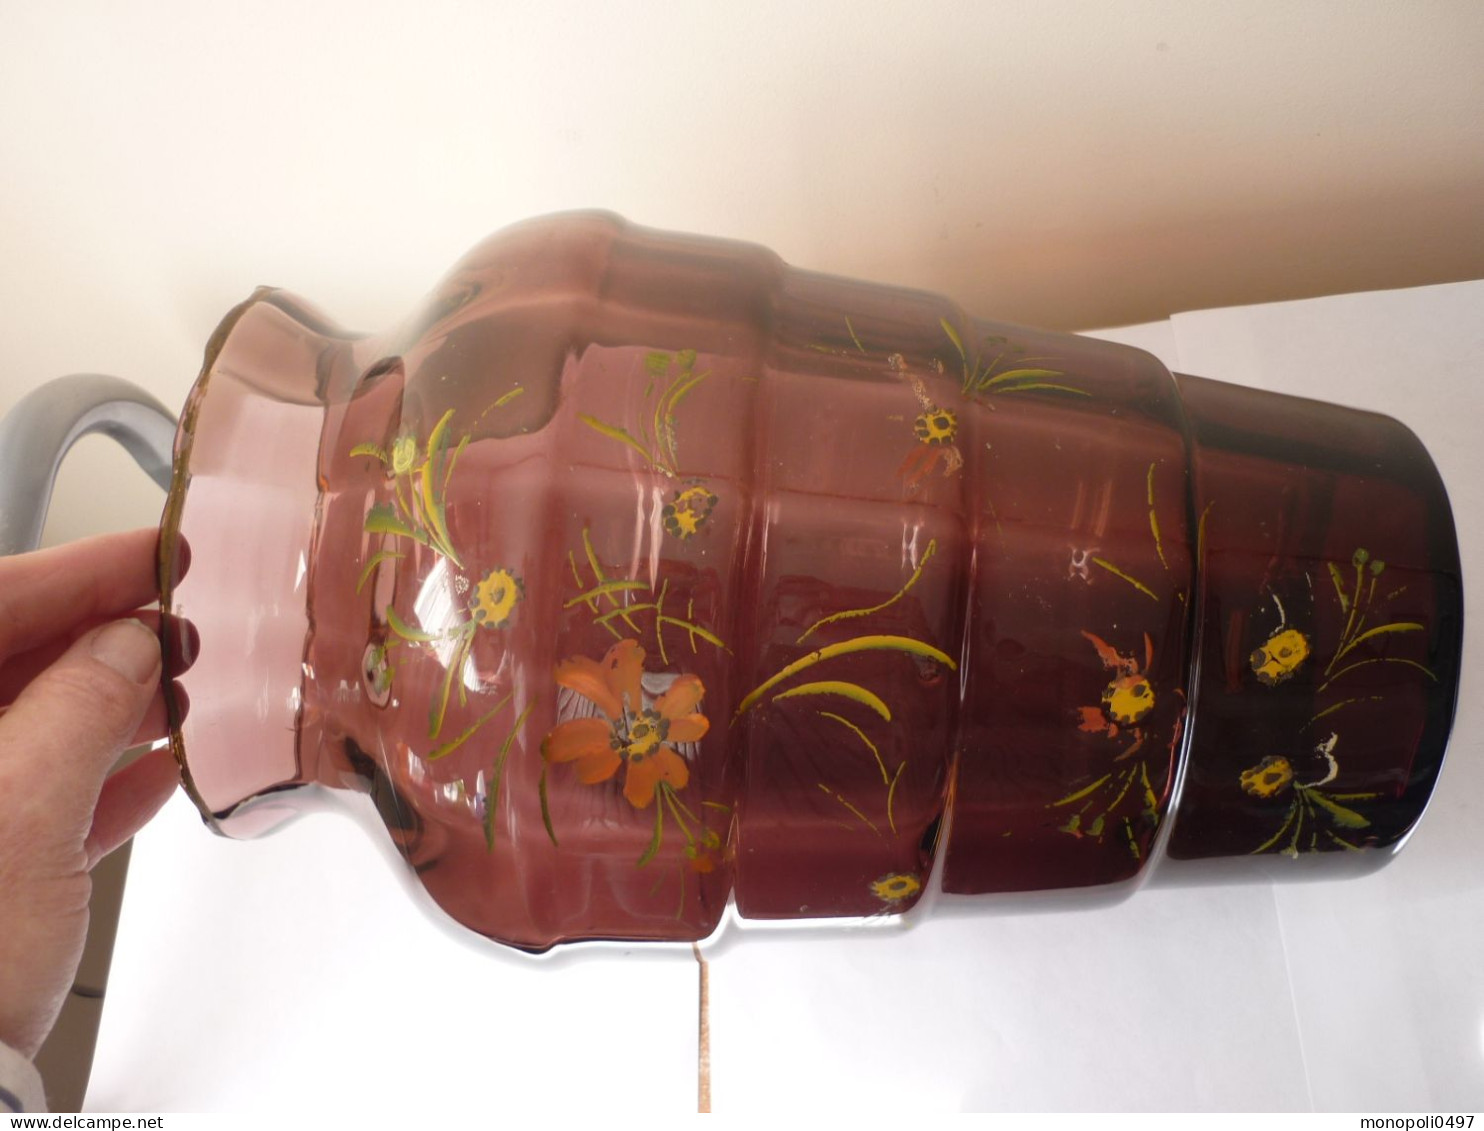 Verrerie de Doyen - Vase mauve avec décor floral